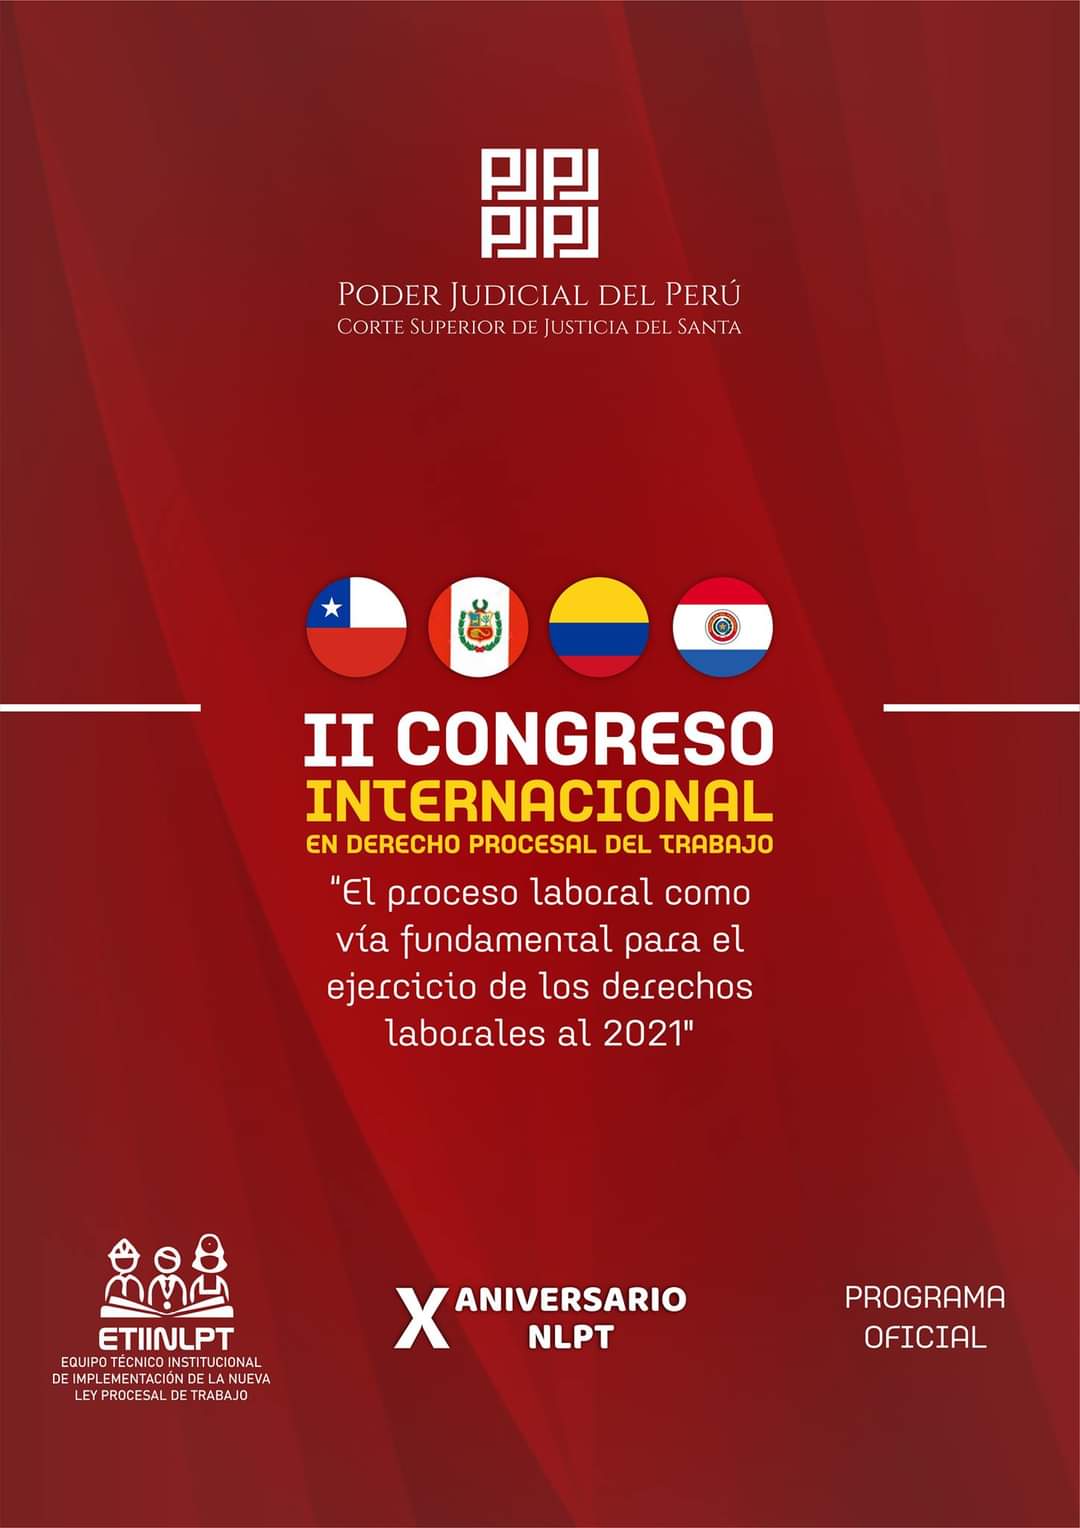 EL PROCESO LABORAL COMO VÃA FUNDAMENTAL PARA EL EJERCICIO DE LOS DERECHOS LABORALES AL 2021